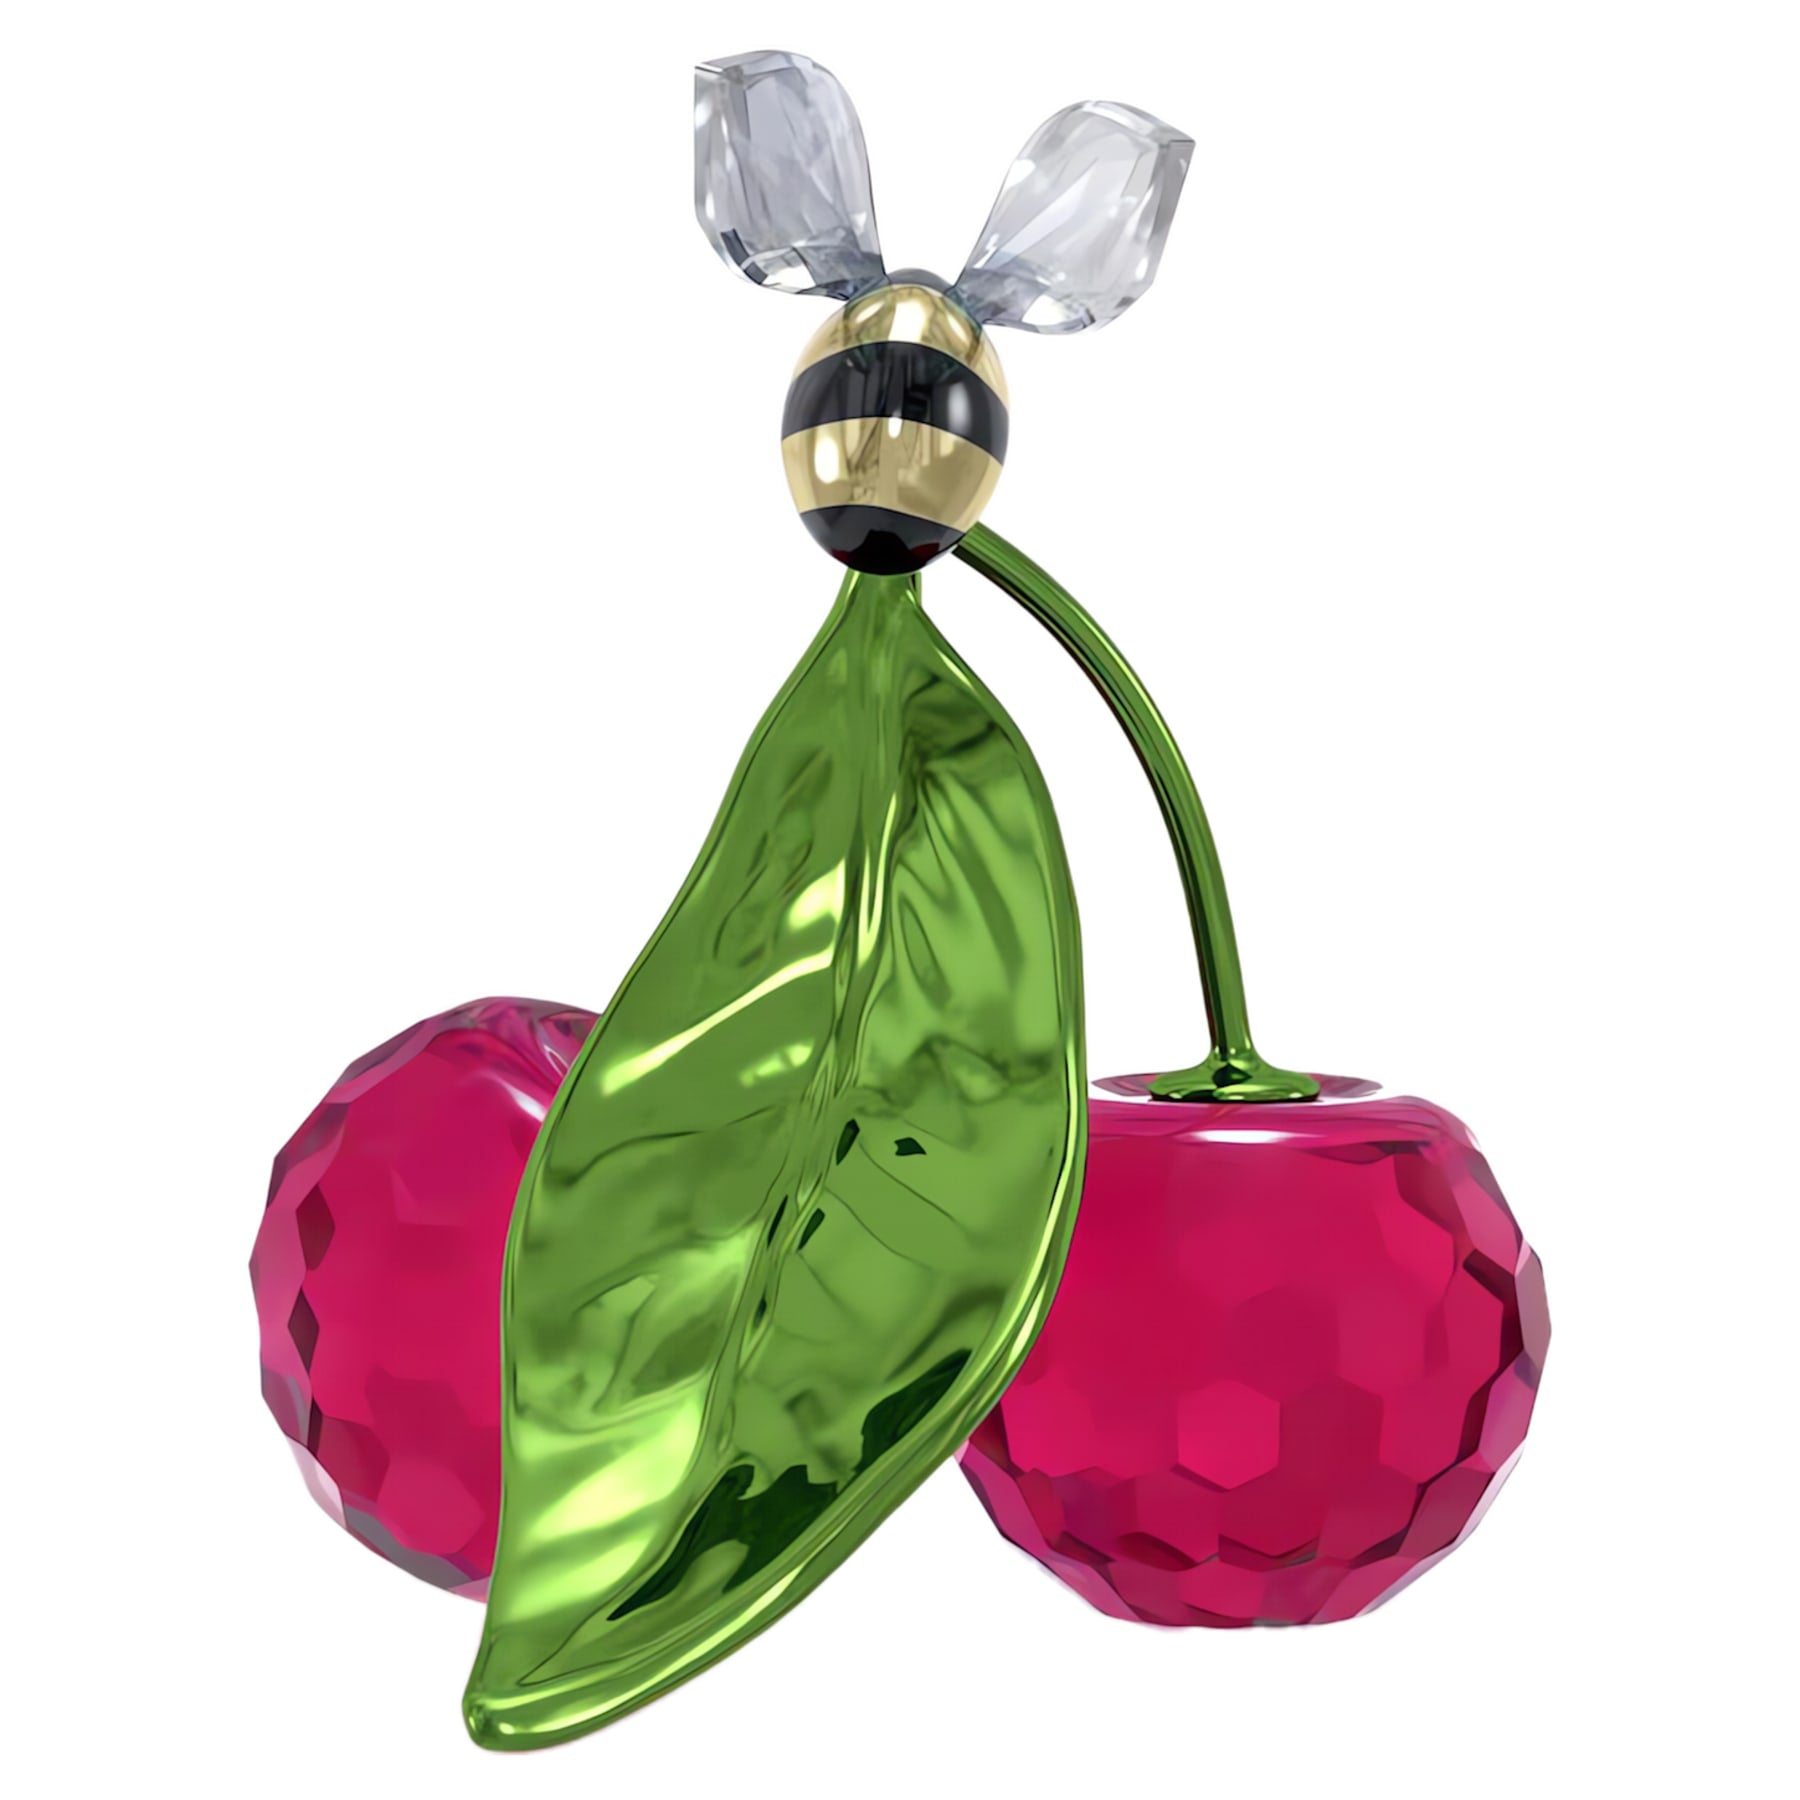 Idyllia - Bee and Cherry - Figurine - Swarovski